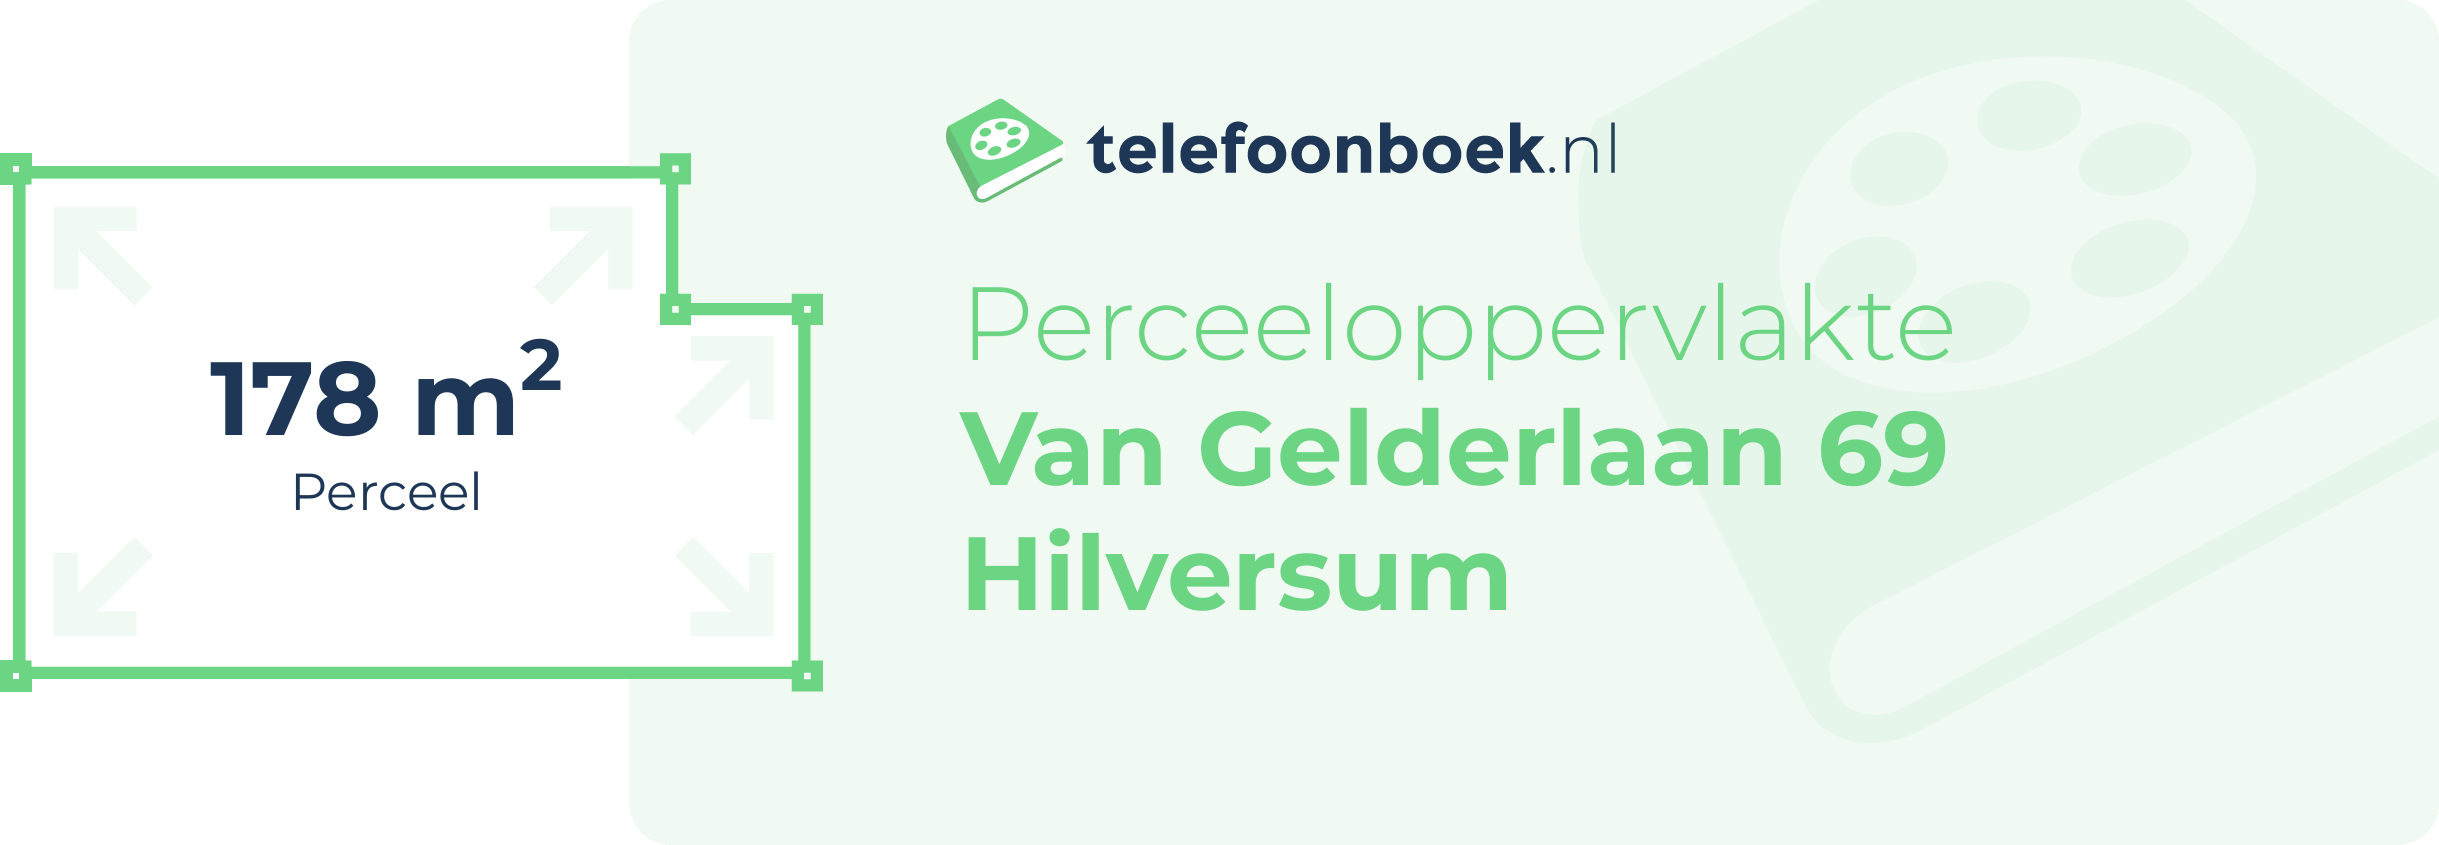 Perceeloppervlakte Van Gelderlaan 69 Hilversum